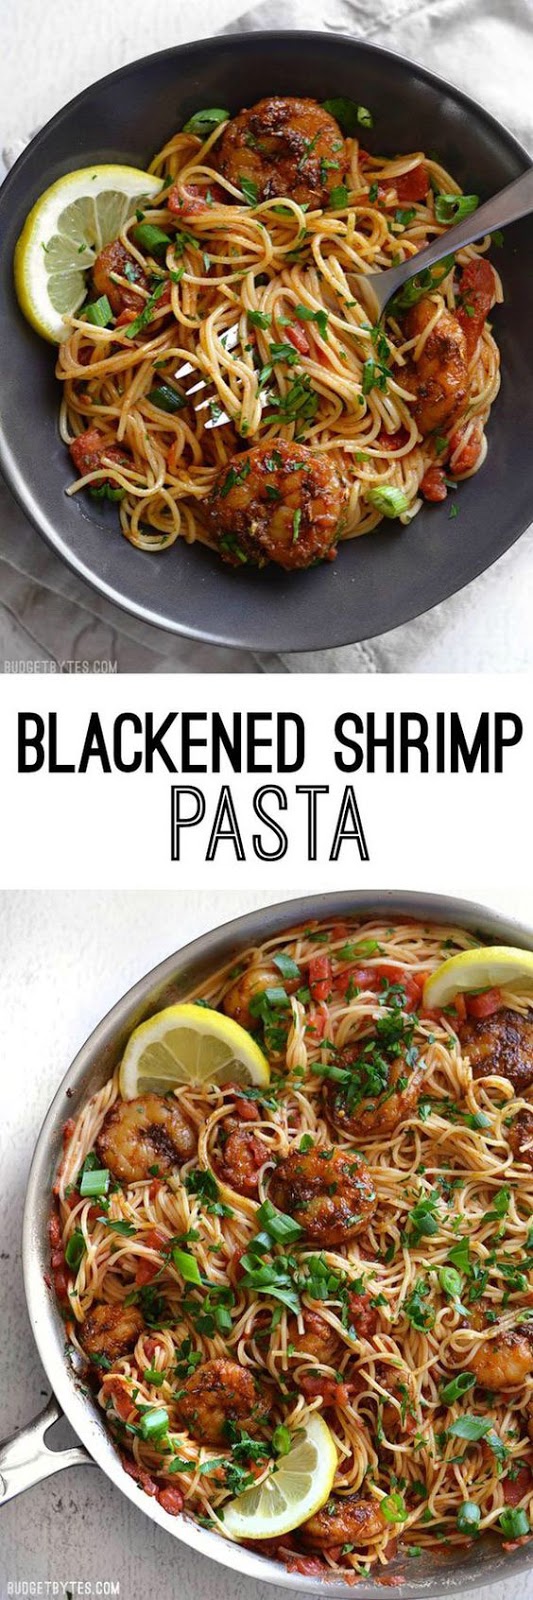 Easy Blackened Shrimp Pasta